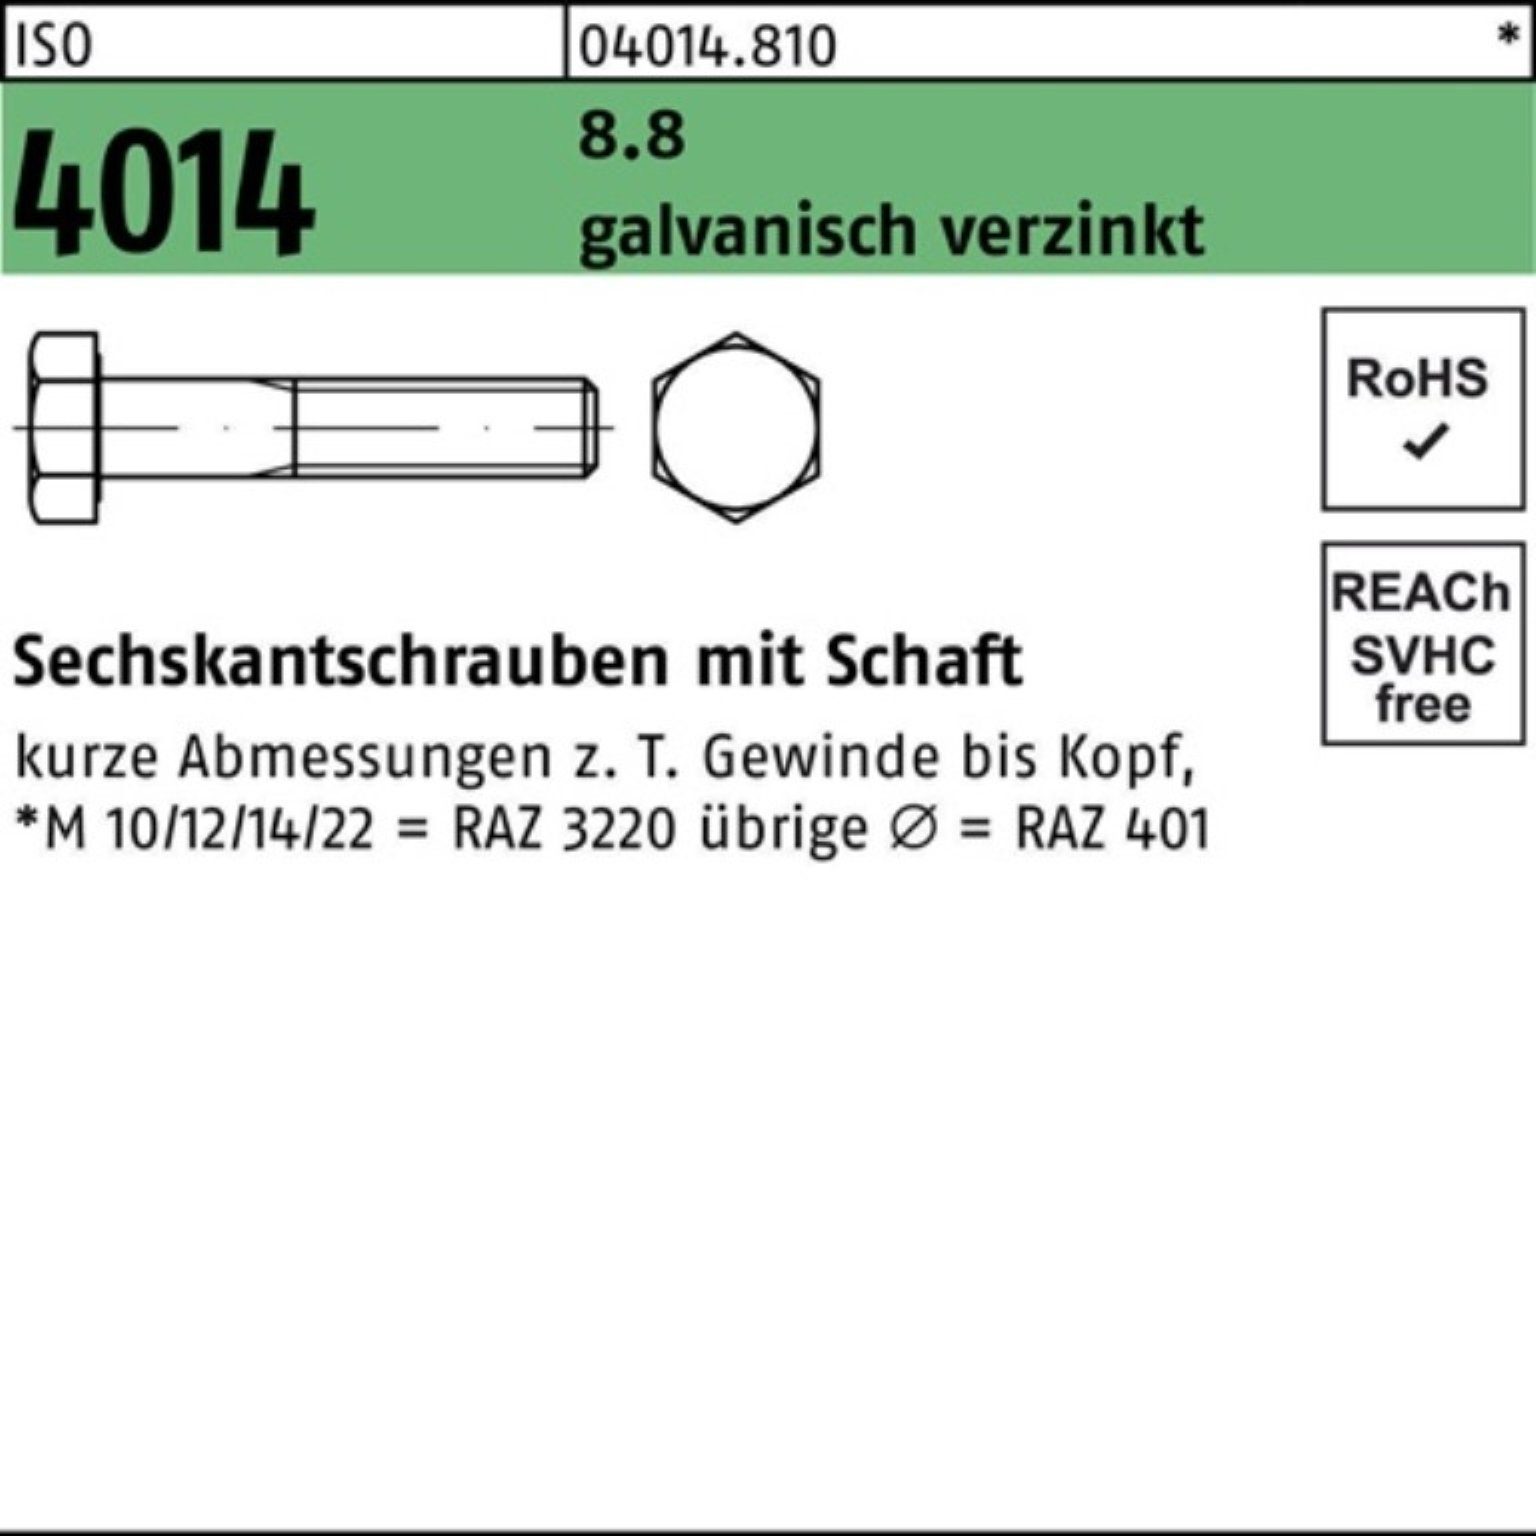 Bufab Sechskantschraube 100er Schaft 8.8 Sechskantschraube M10x Pack 100 ISO galv.verz. 1 4014